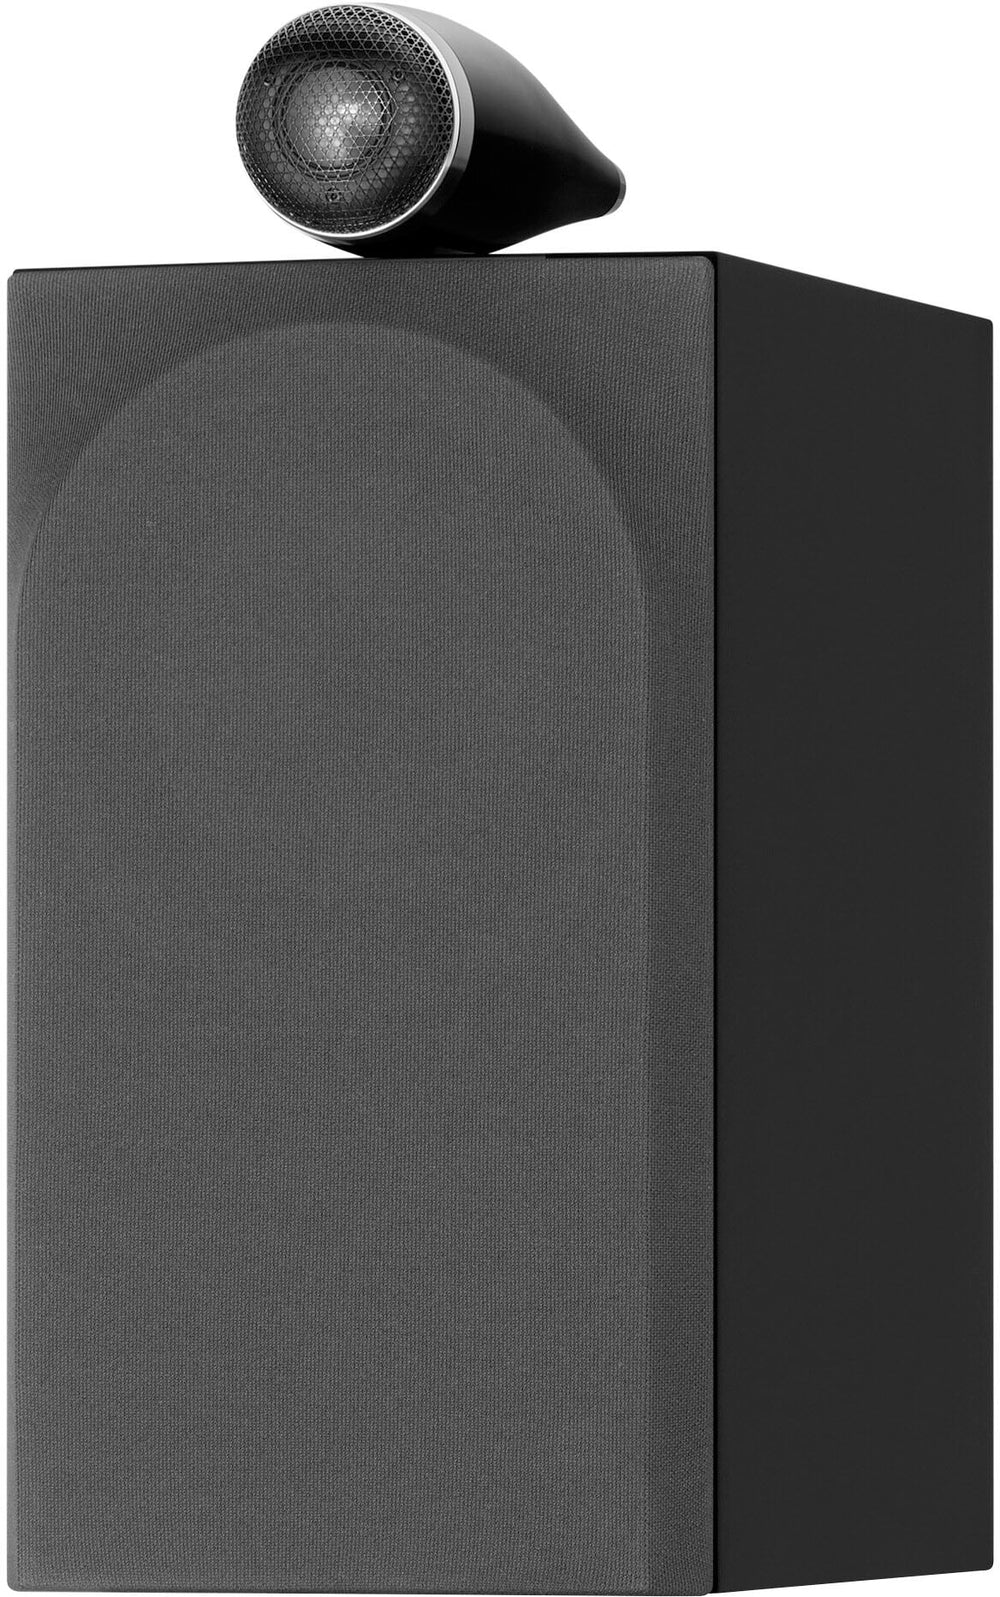 Bowers & Wilkins - 700 Series 3 Bookshelf Speaker w/ Tweeter on top, 6.5" midbass (pair) - Gloss Black_1